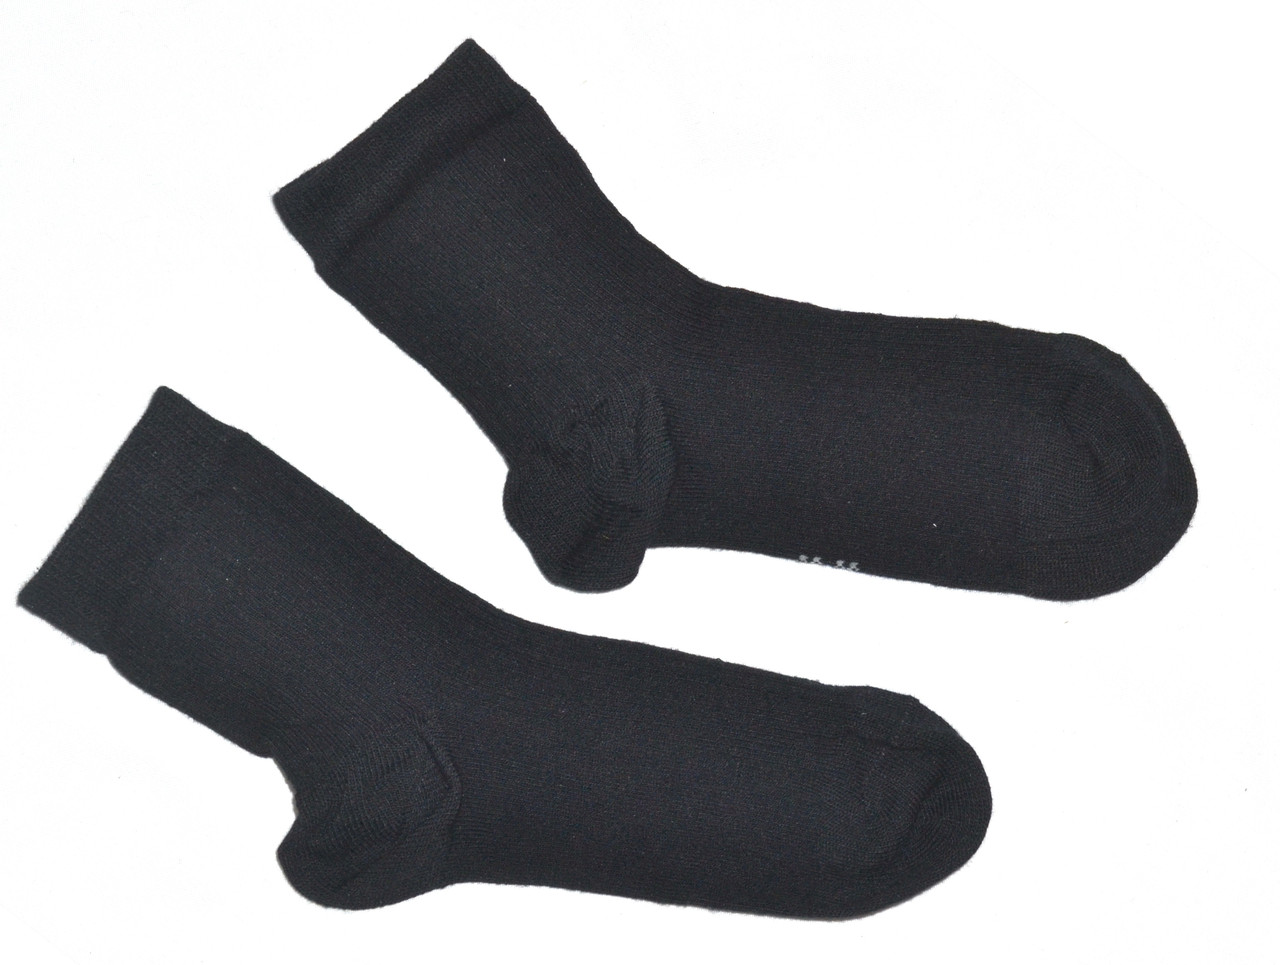 Носки высокие черные LIDL на размер 35-38